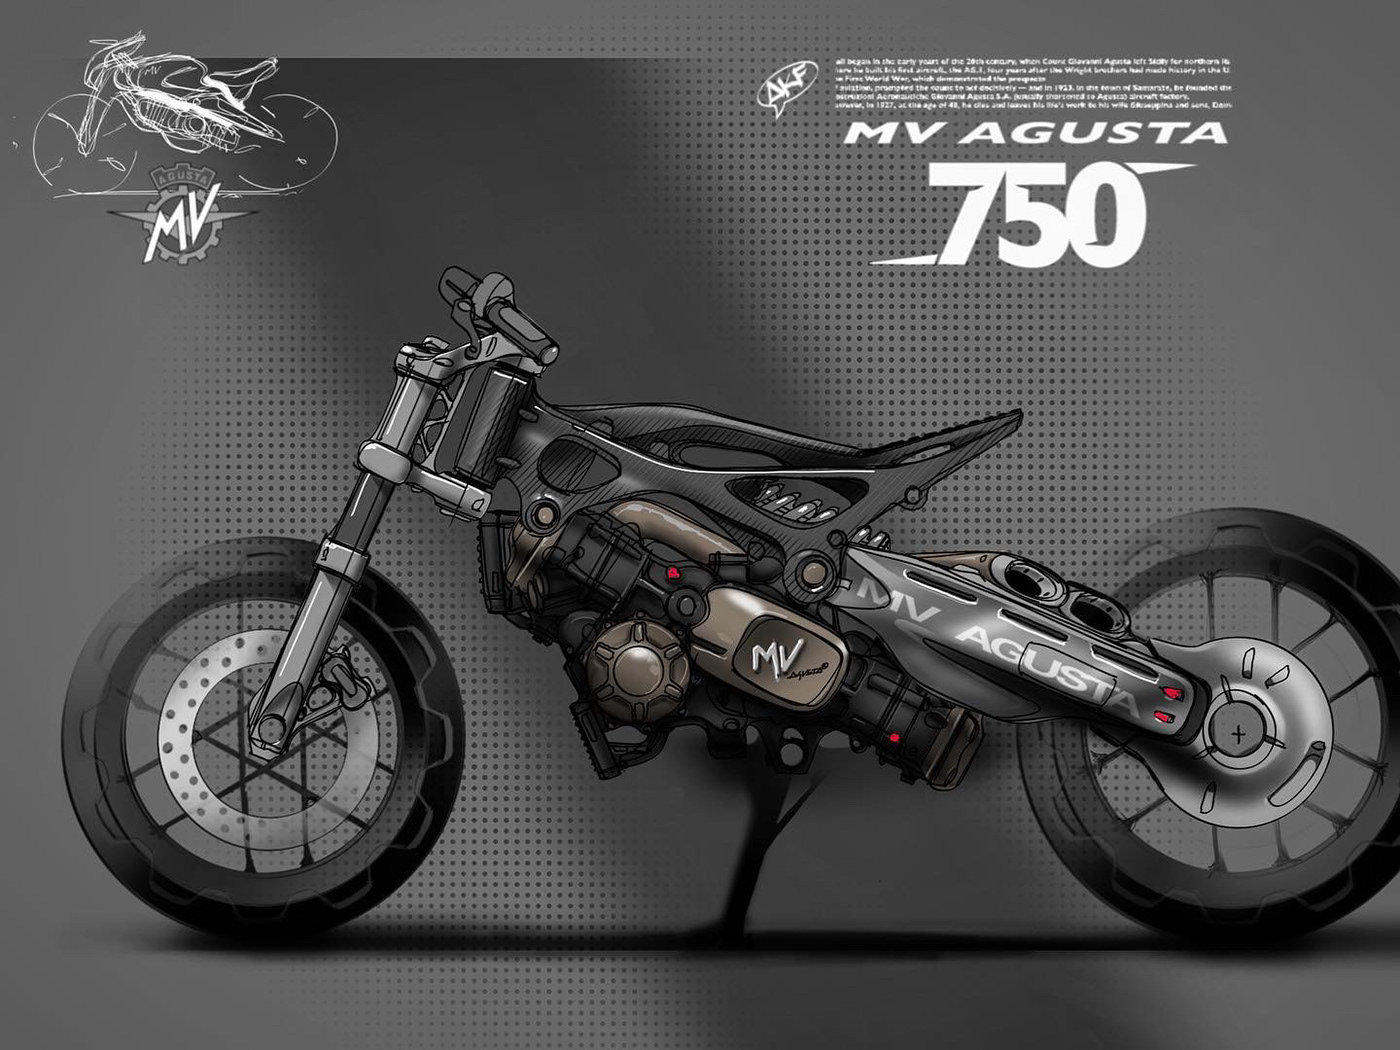 mv agusta-750原型概念,超酷的摩托车!